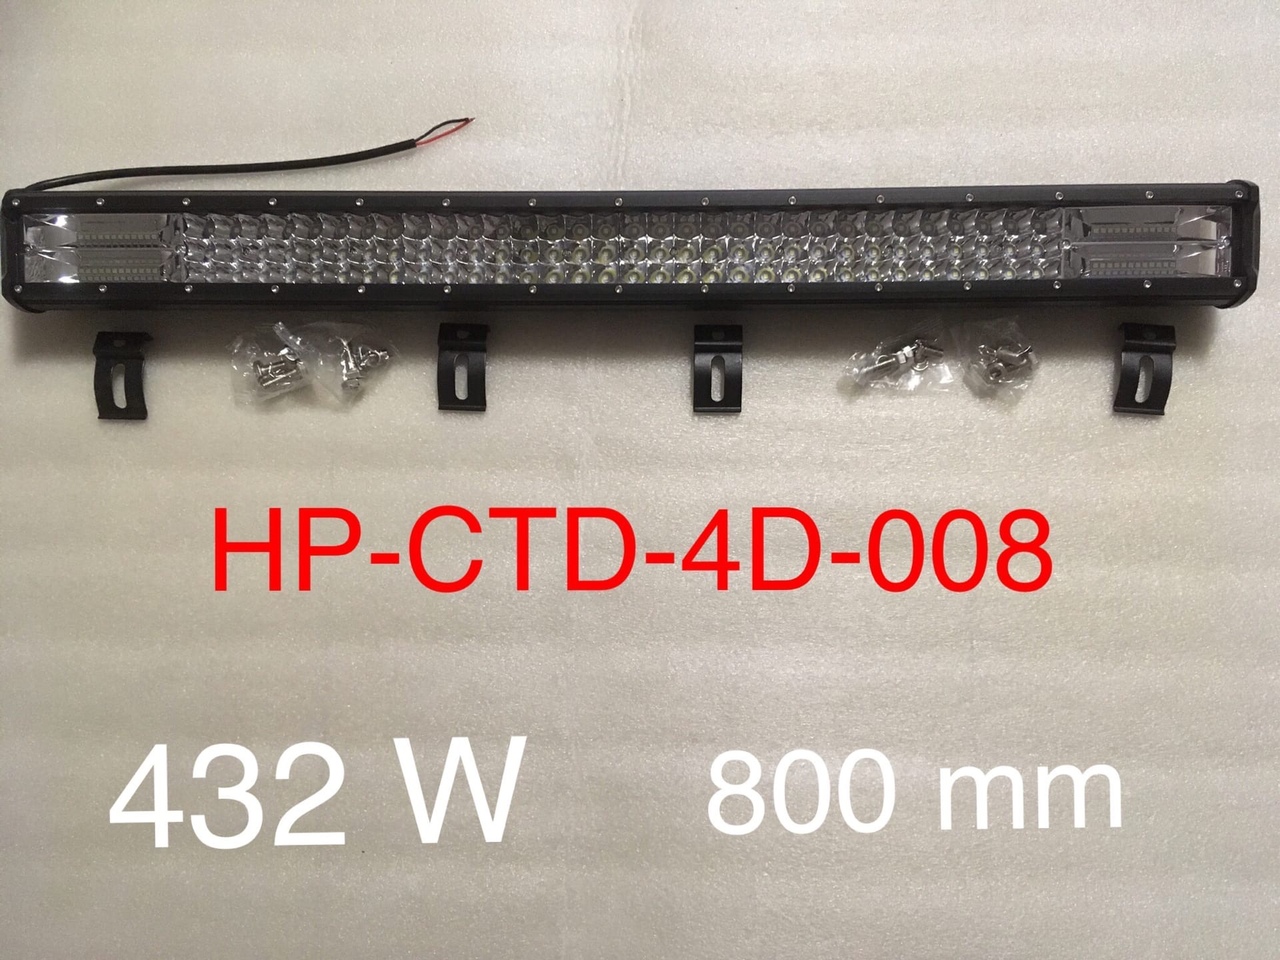 Балка с диодами HP-CTD-4D-008 (432W) 800 мм